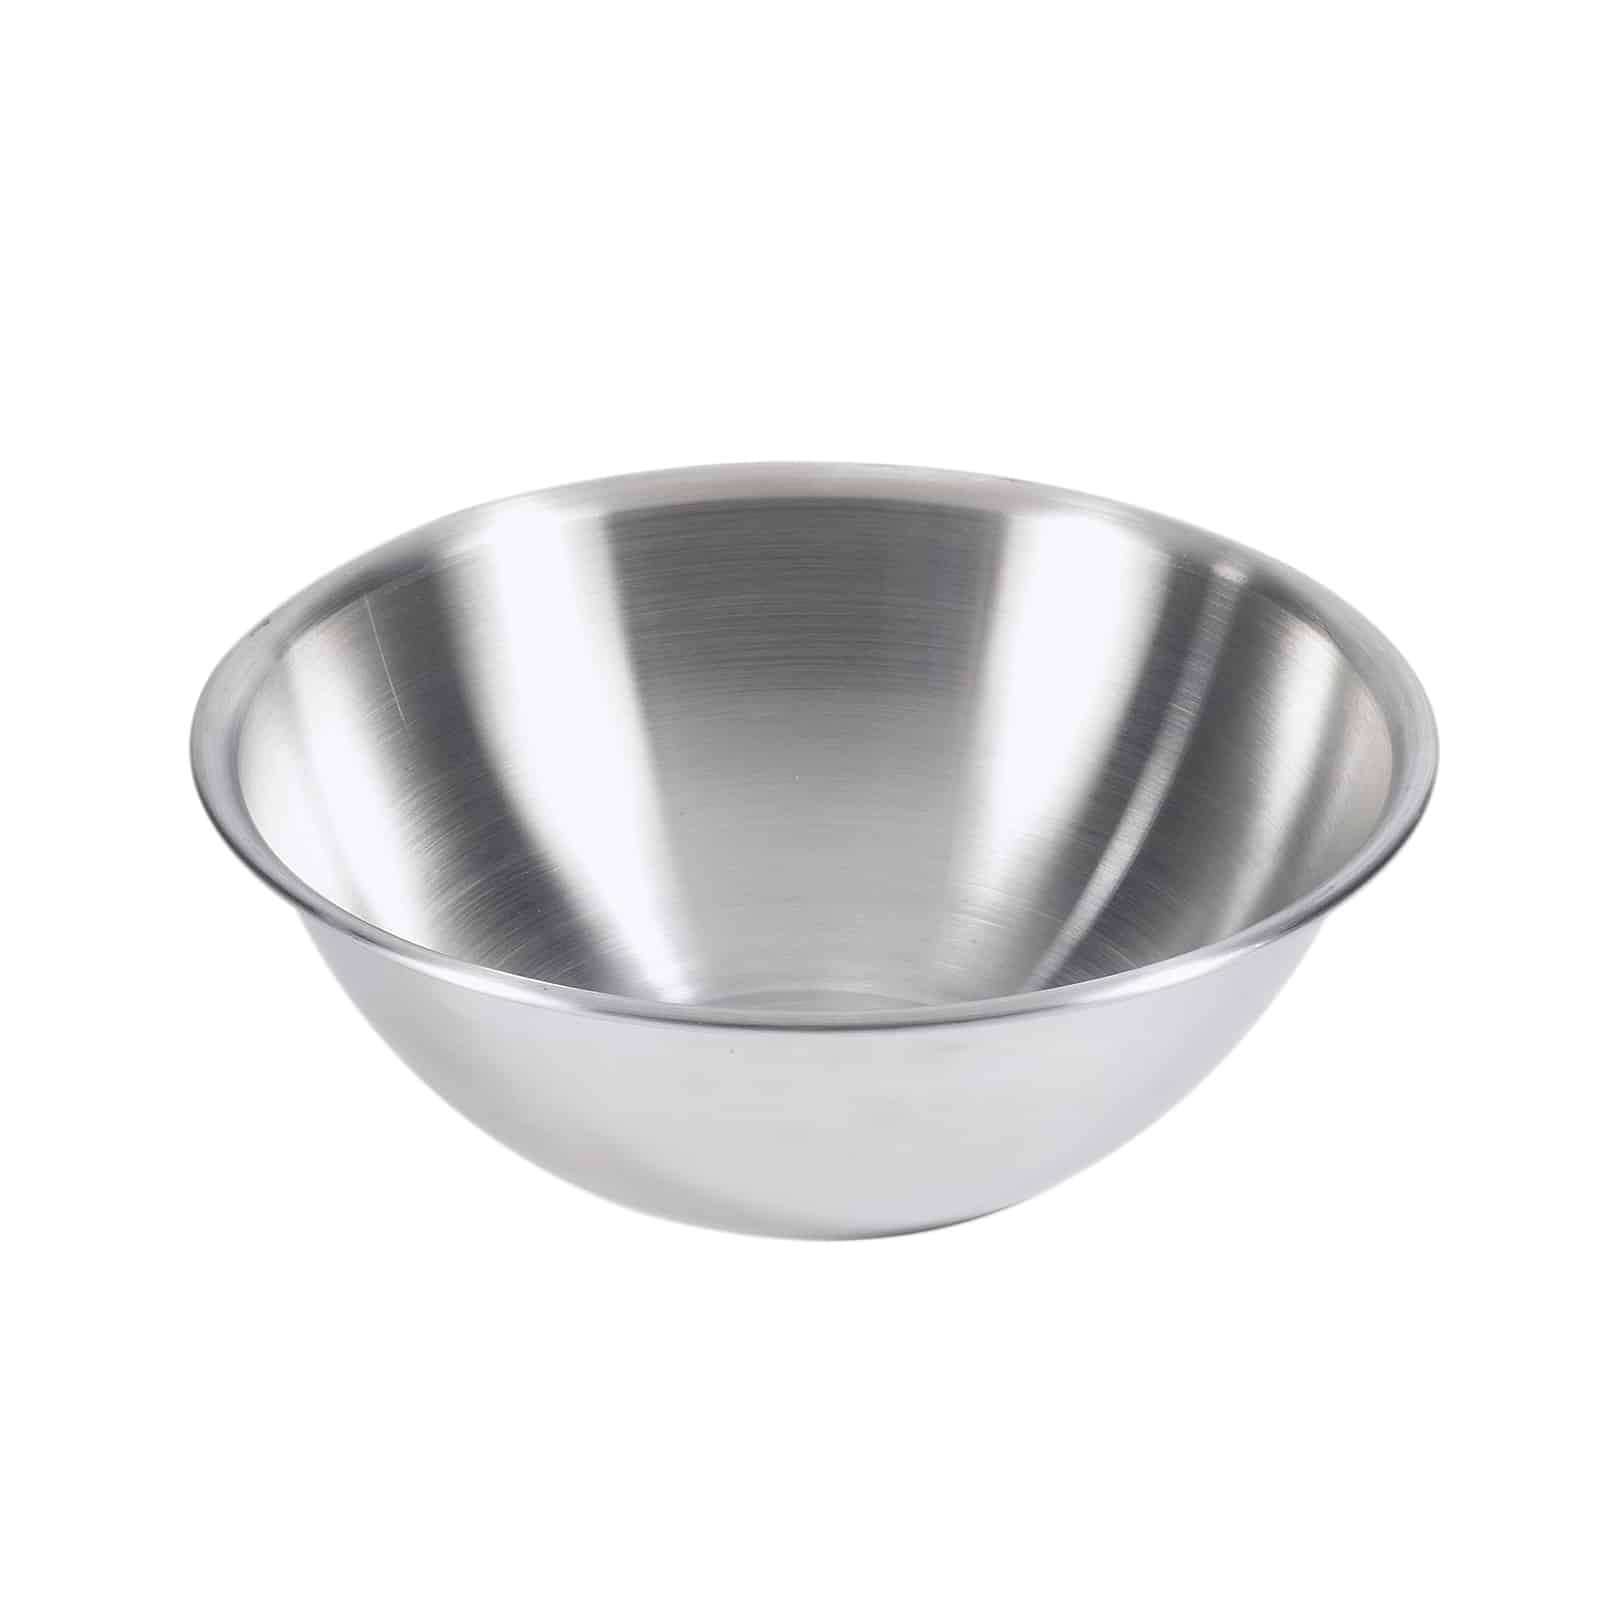 Bowl para mezclar 0.75 lt en acero inoxidable Acabado espejo, interior satinado - Browne